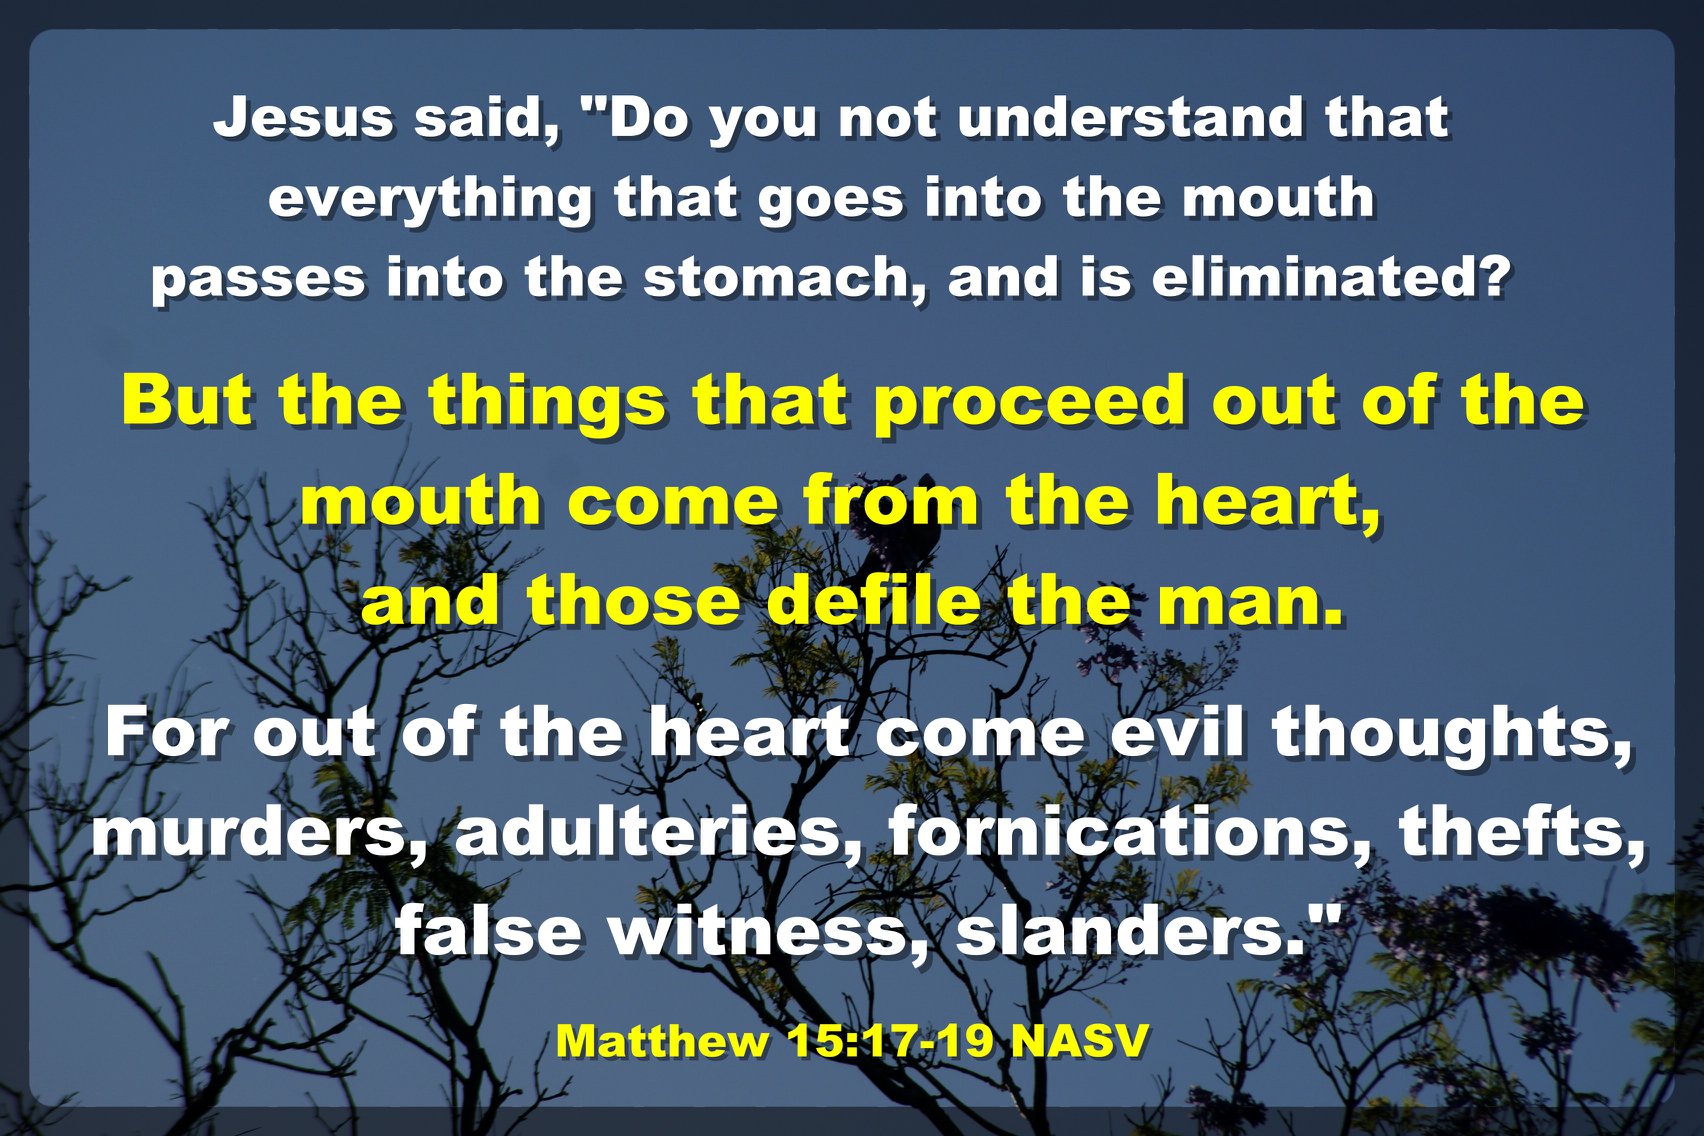 matt15:17-19